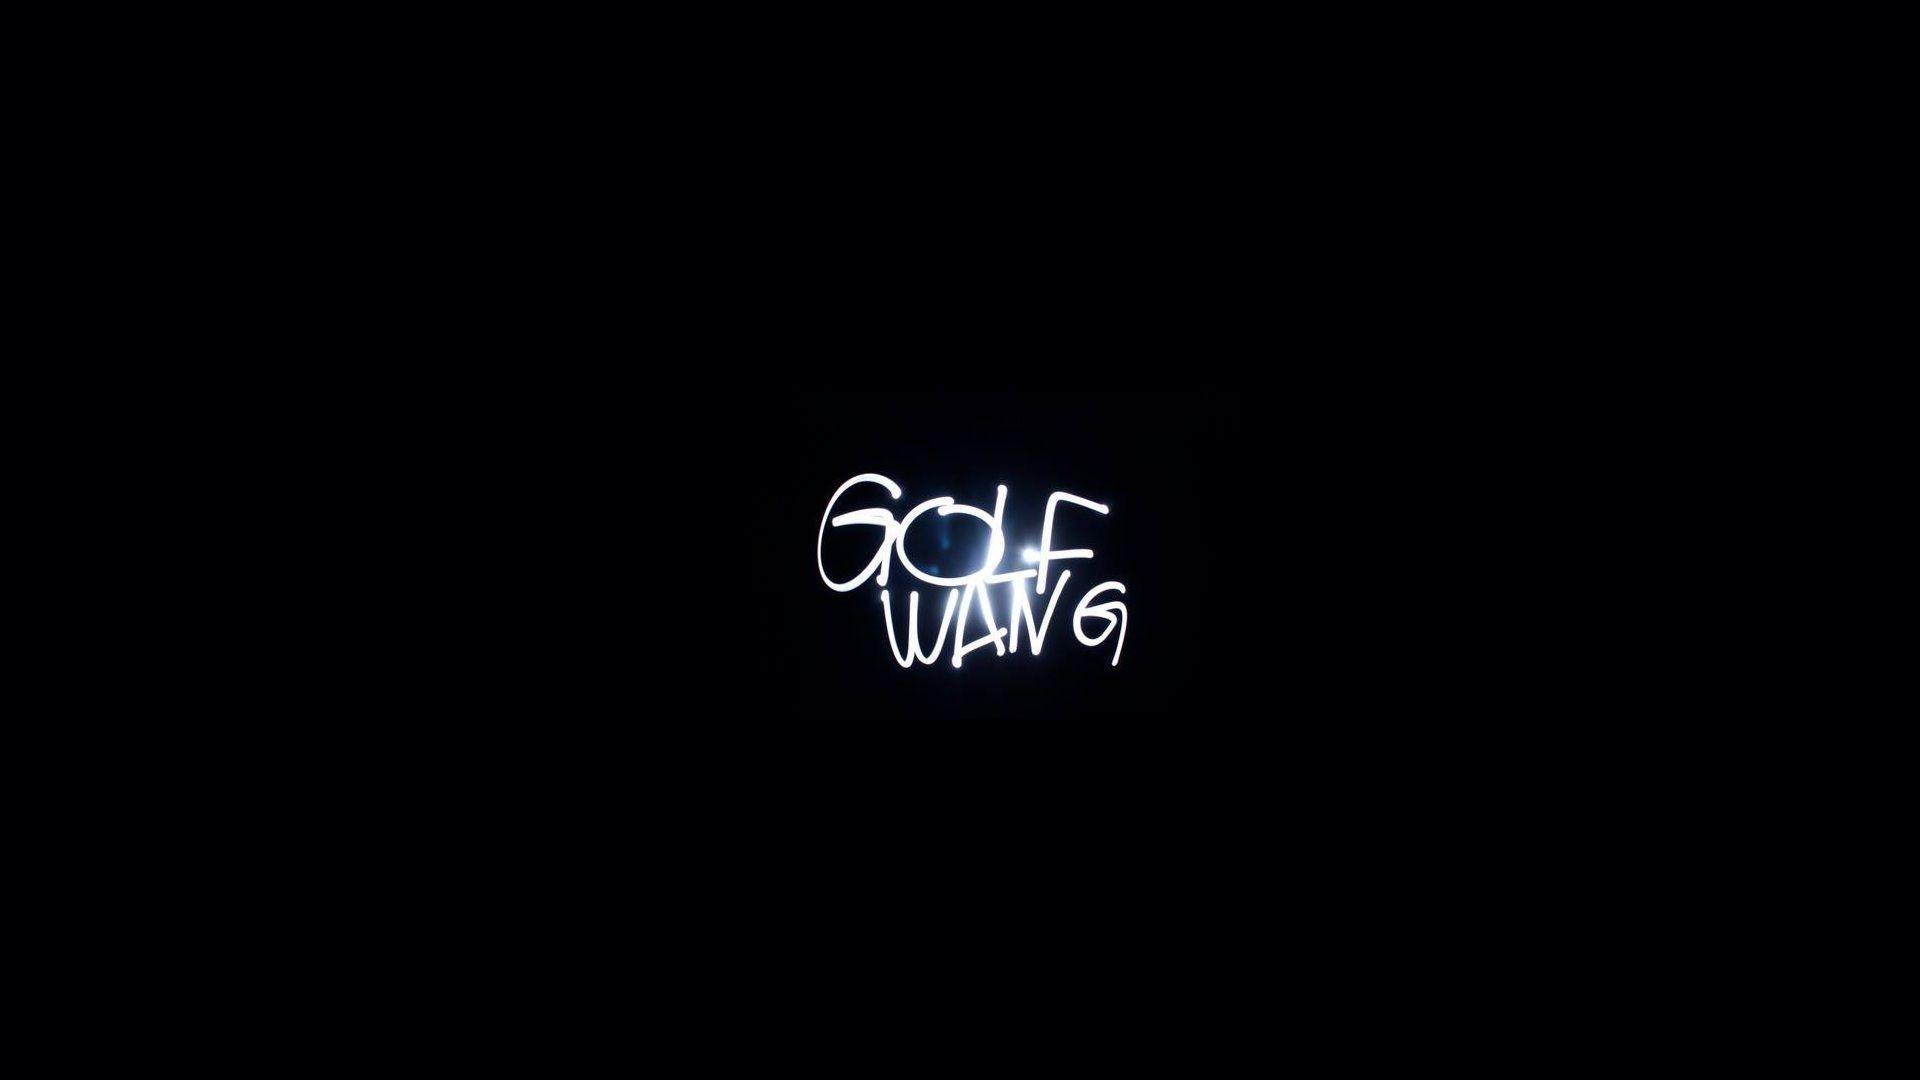 Odd Future Golf Wang Logo - golf wang wallpaper : OFWGKTA